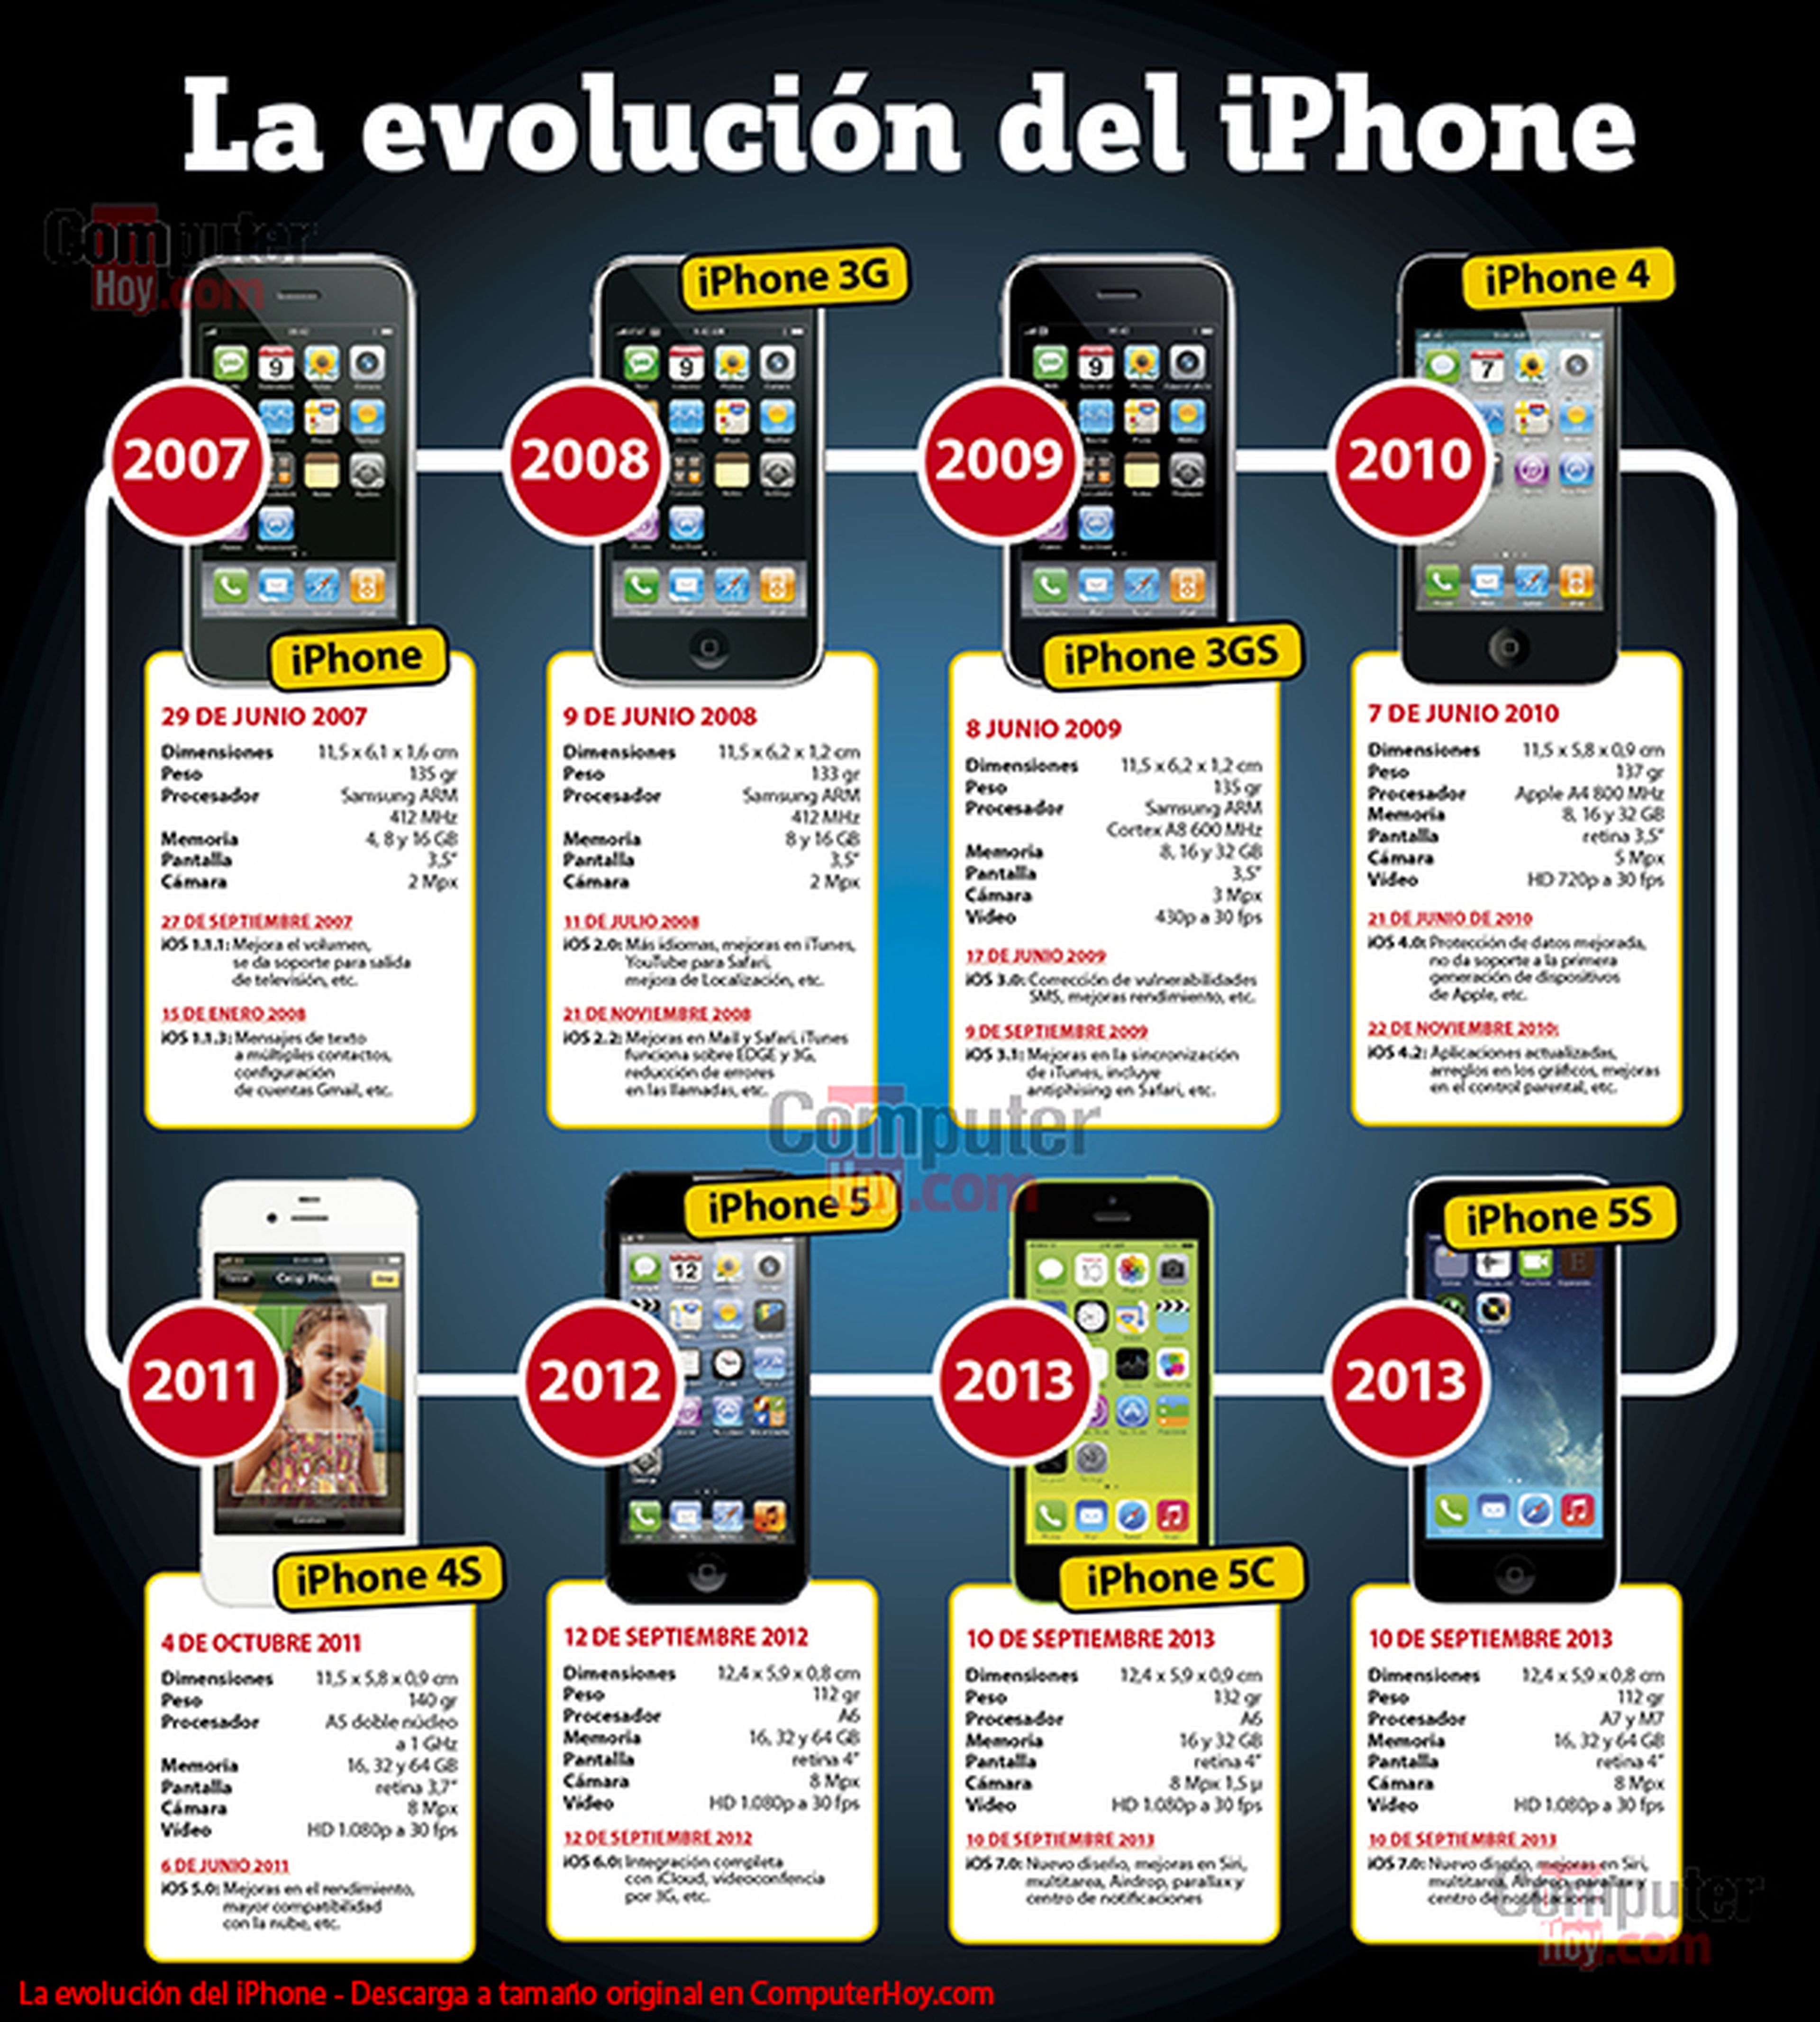 La evolución o historia del iPhone